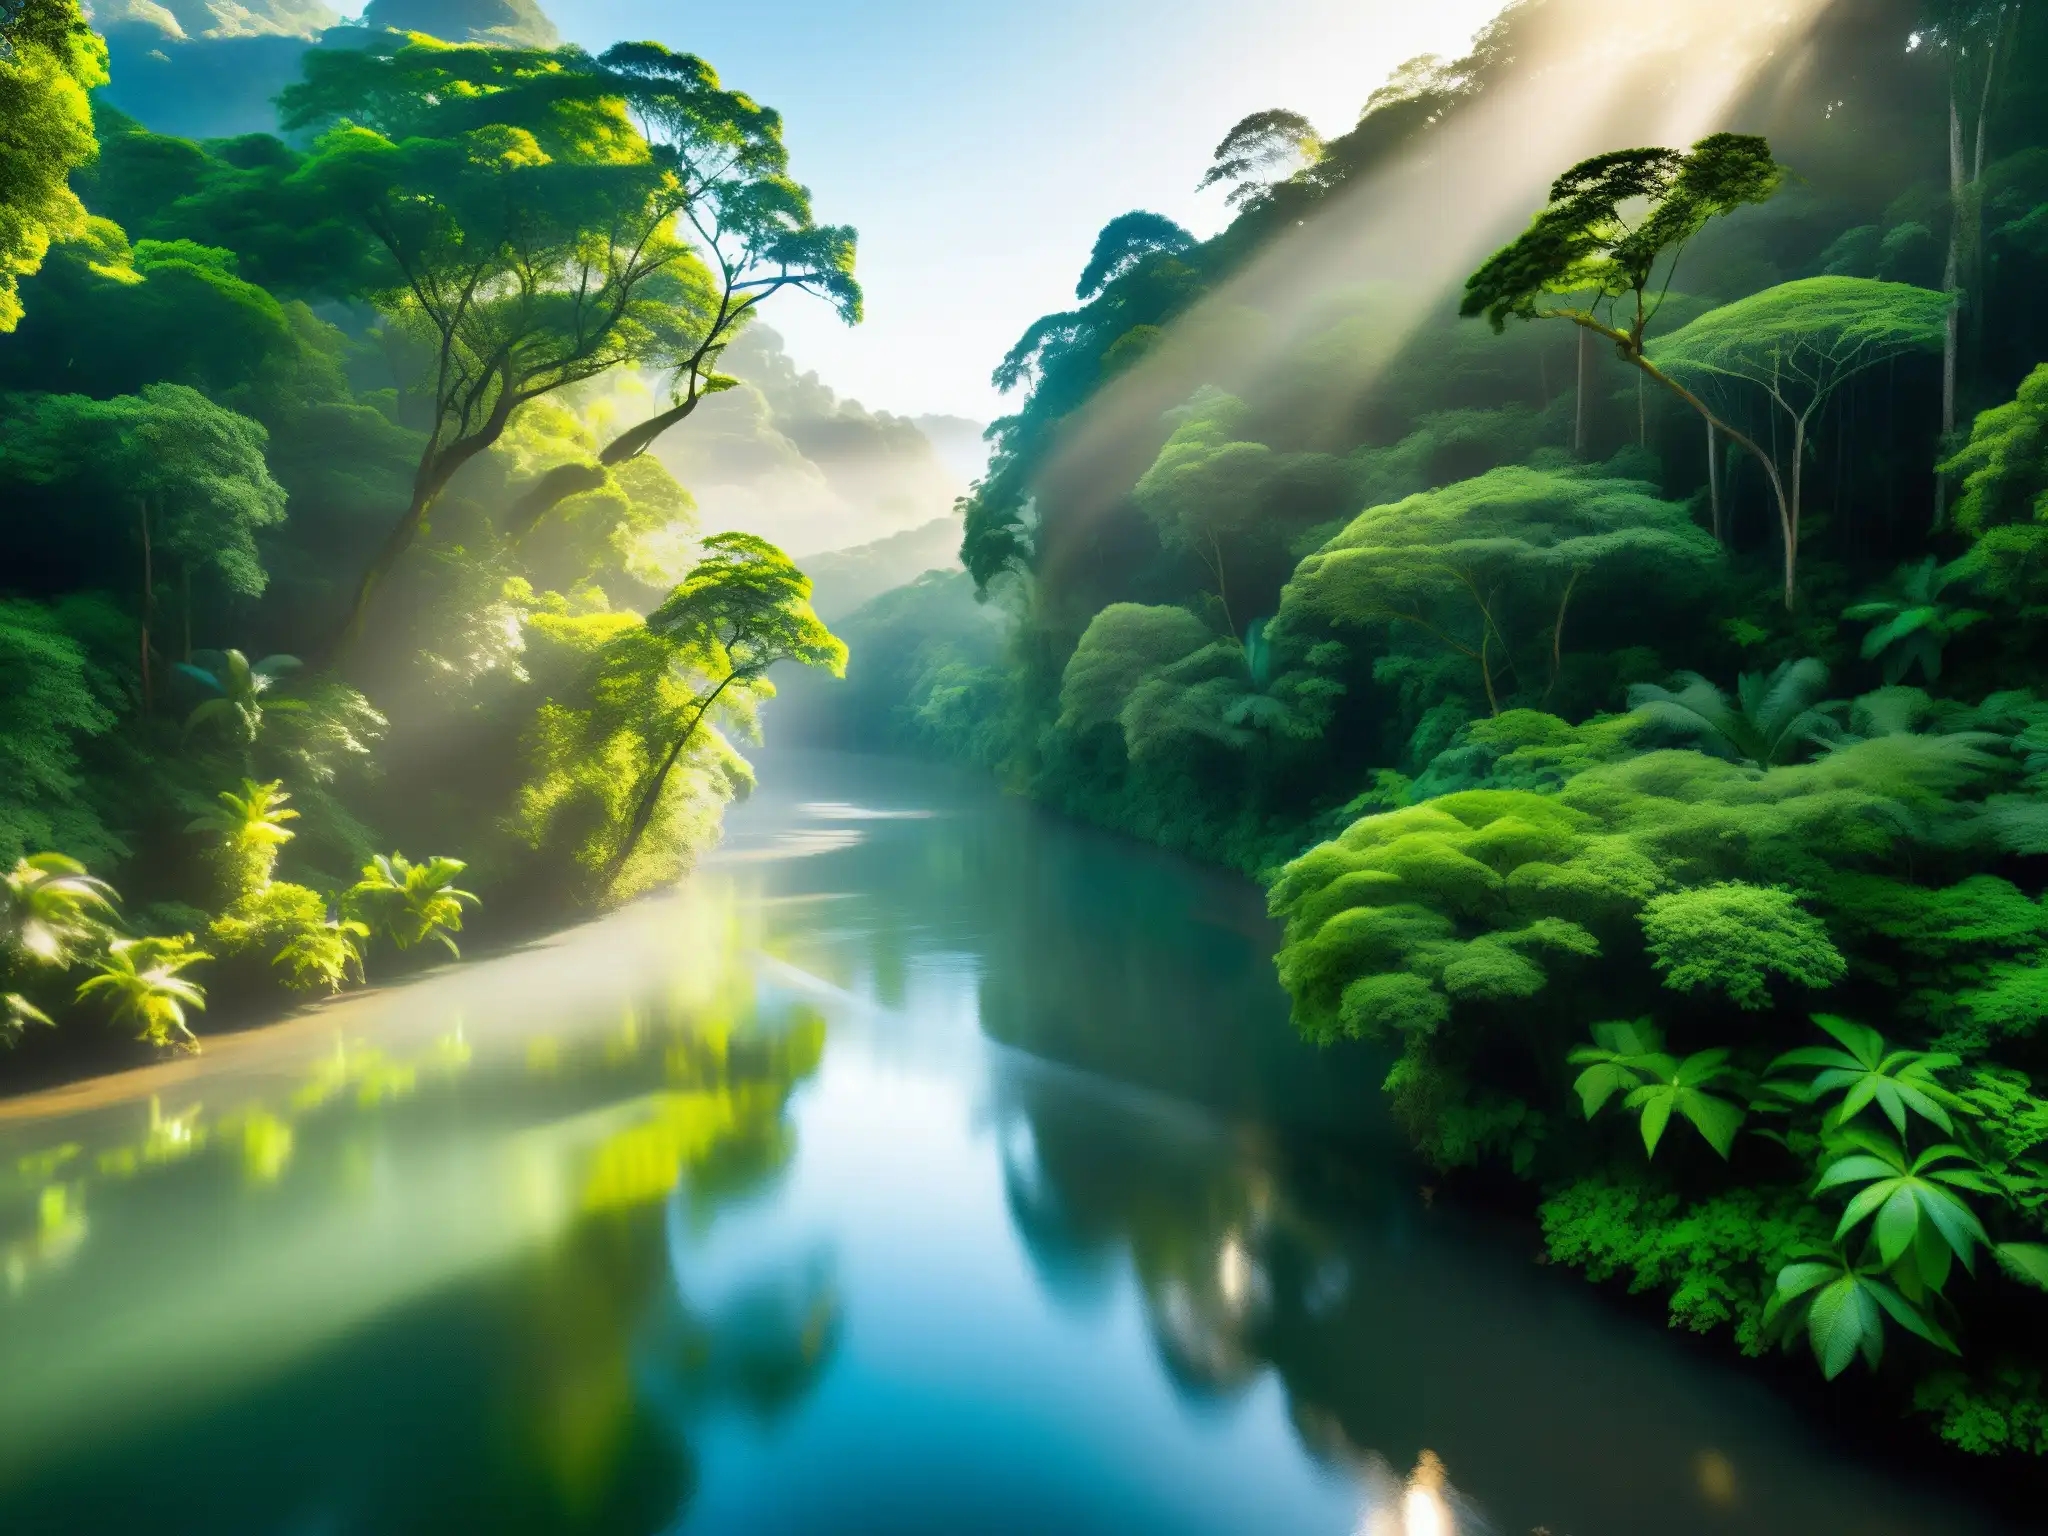 Un río sereno serpentea entre la exuberante selva, iluminado por el sol y cubierto de neblina